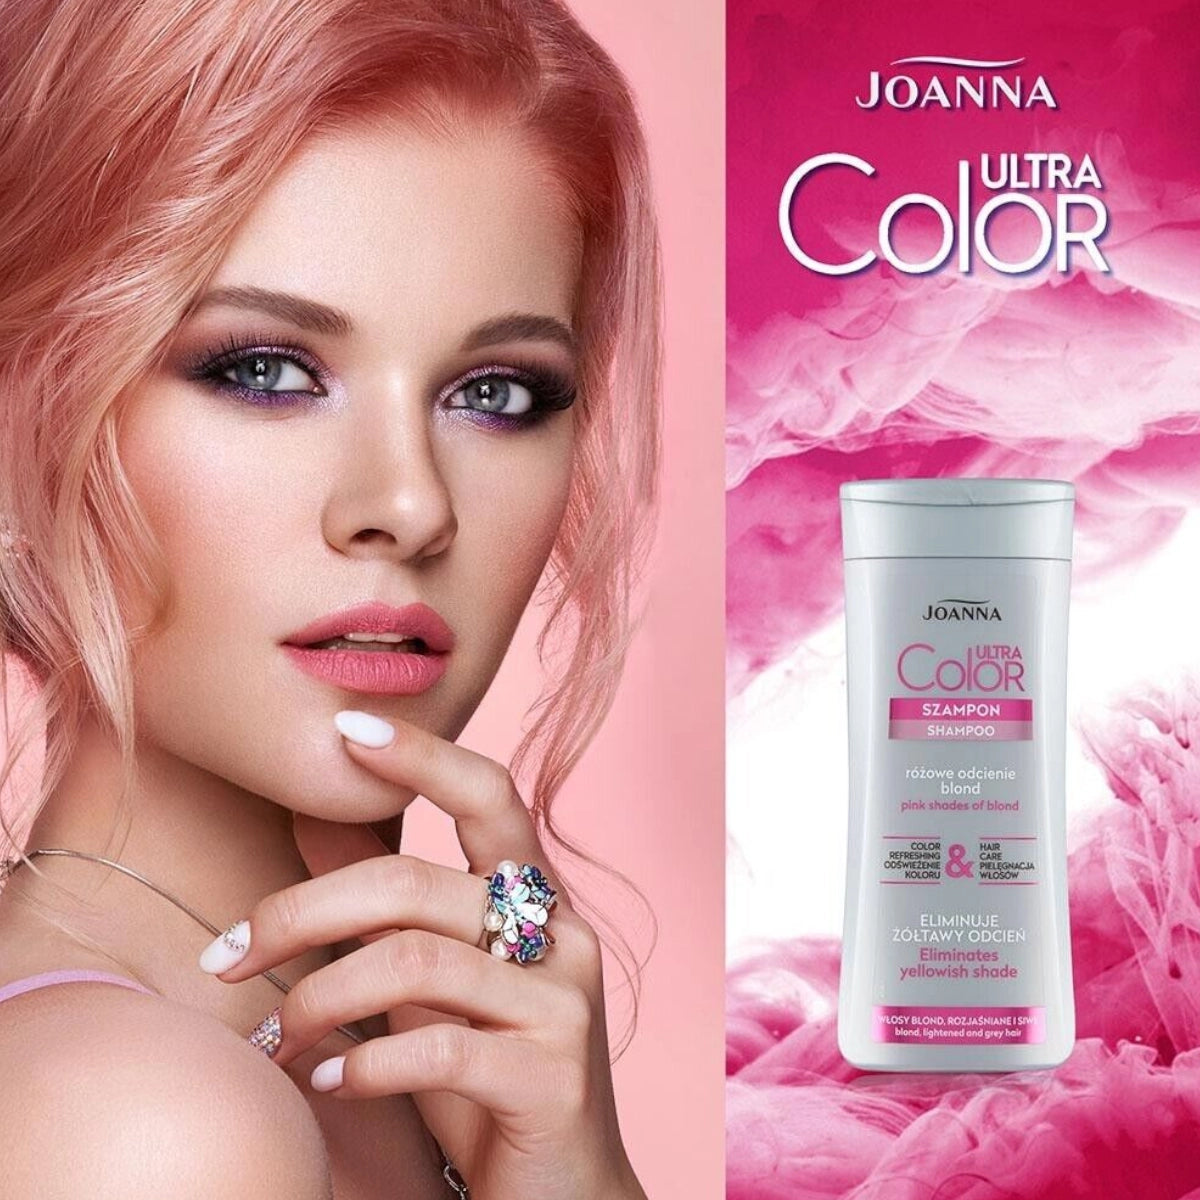 szampon joanna ultra color system efekty